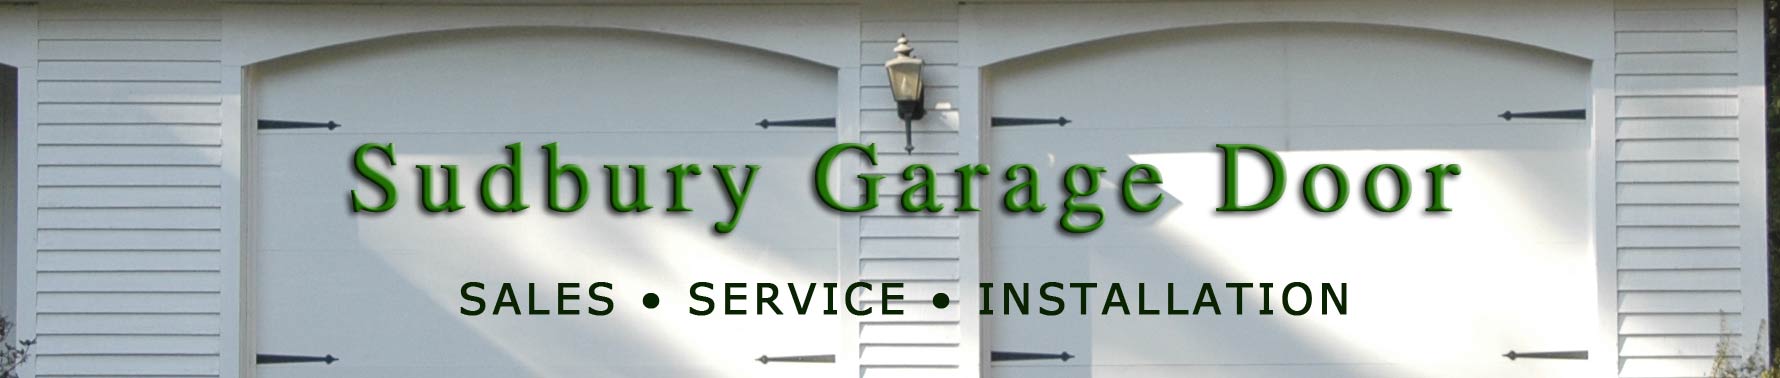 Sudbury Garage Door | Sales, Service, Installation